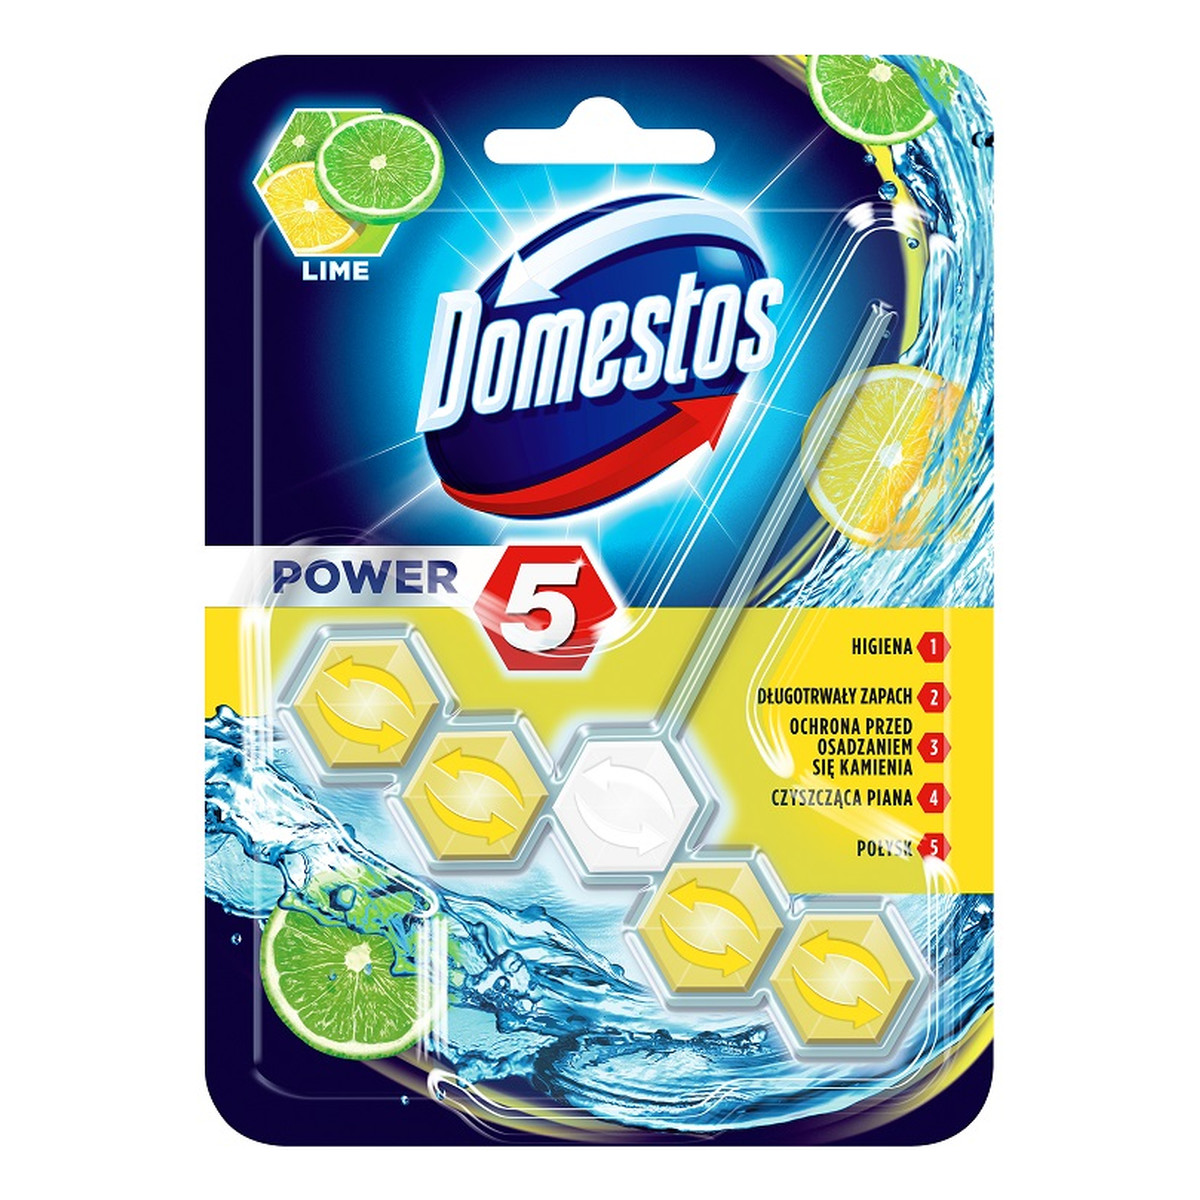 Domestos Power 5 kostka toaletowa Lime 55g